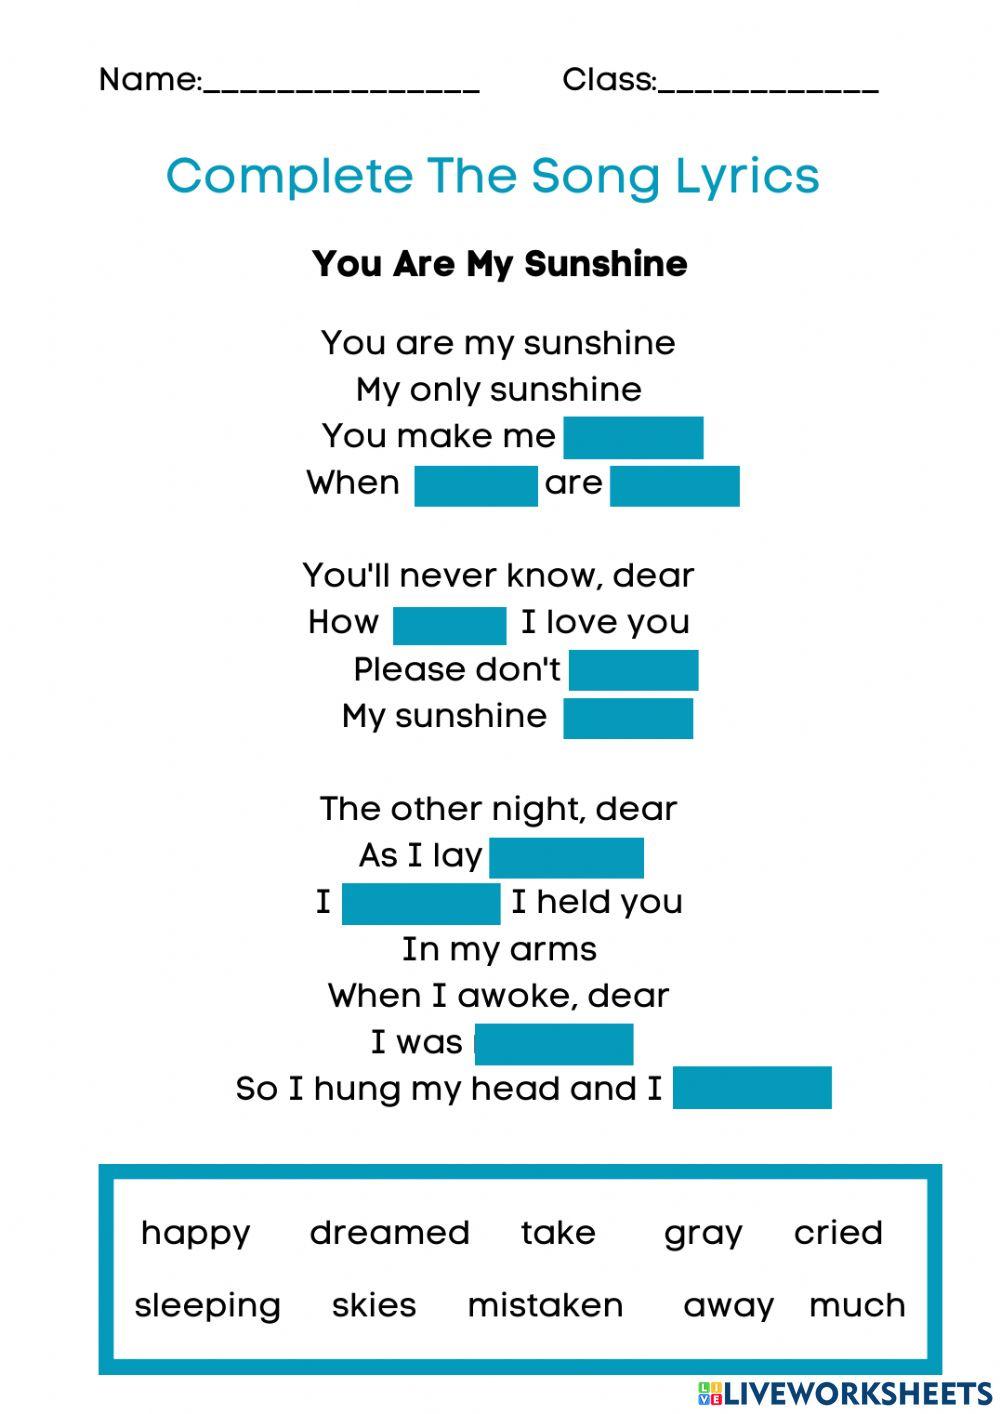 Cover me in sunshine lyrics worksheet